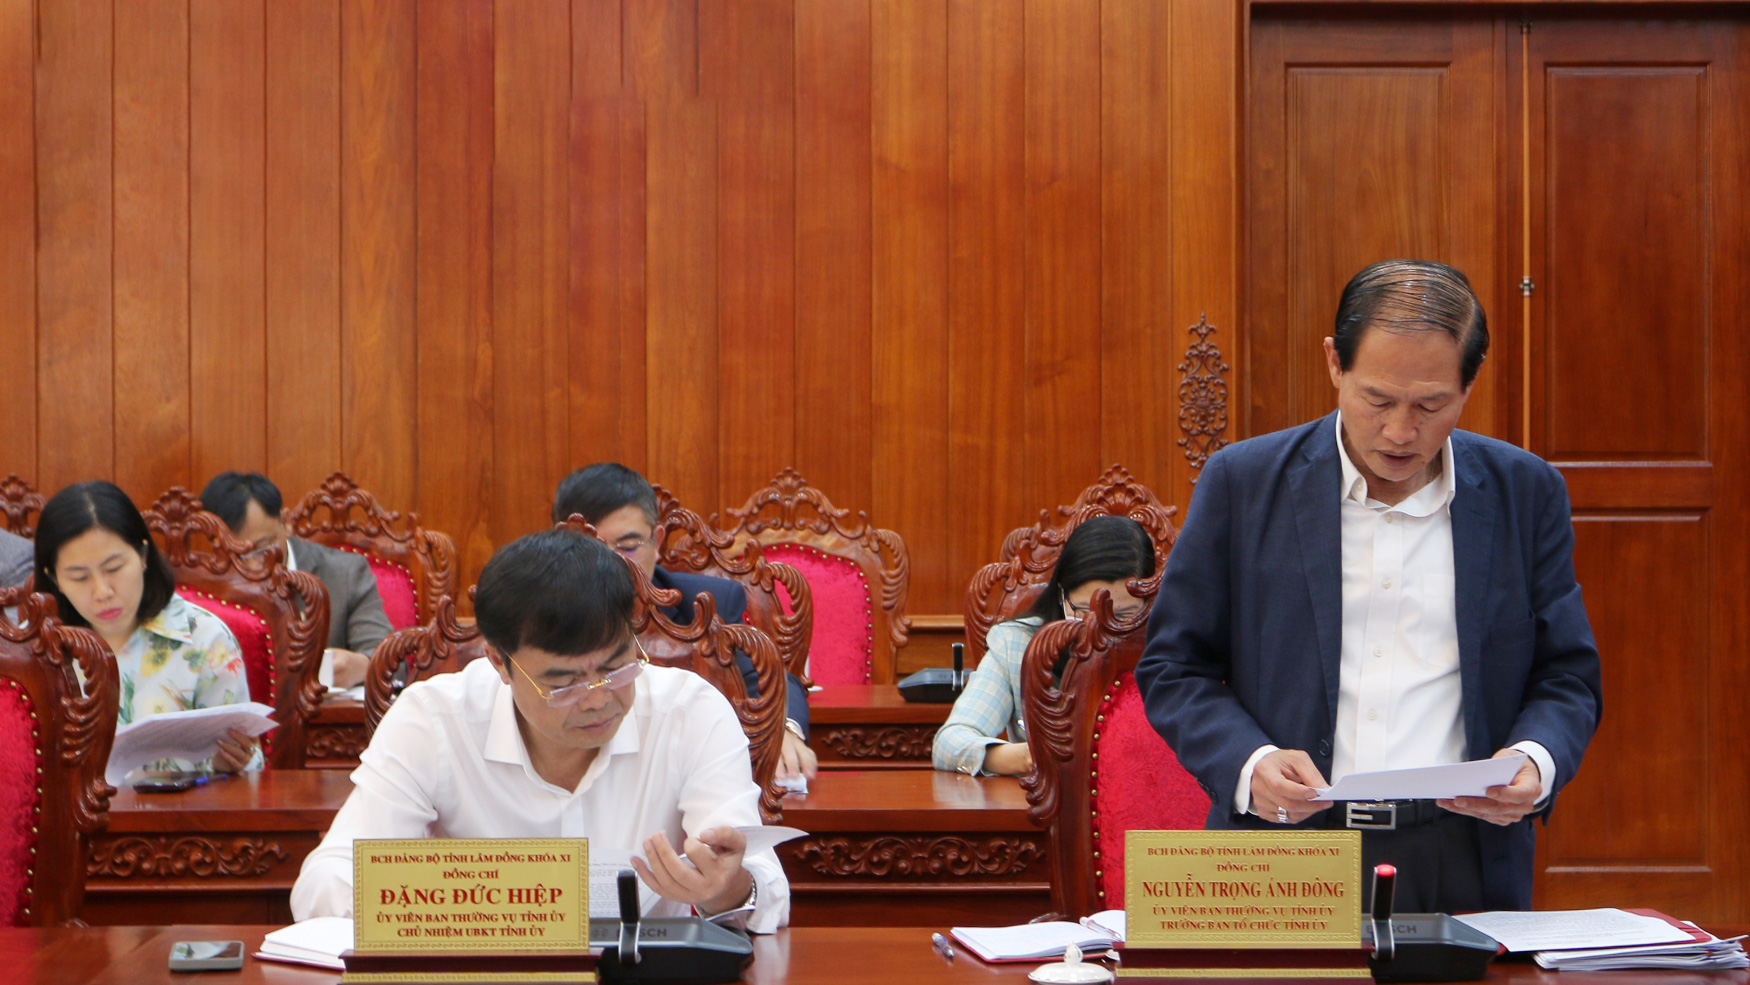 Trưởng Ban Tổ chức Tỉnh ủy Nguyễn Trọng Ánh Đông báo cáo Tổng kết thực hiện Quy chế bầu cử trong Đảng và tổng kết 10 năm thực hiện Chỉ thị số 39-CT/TW